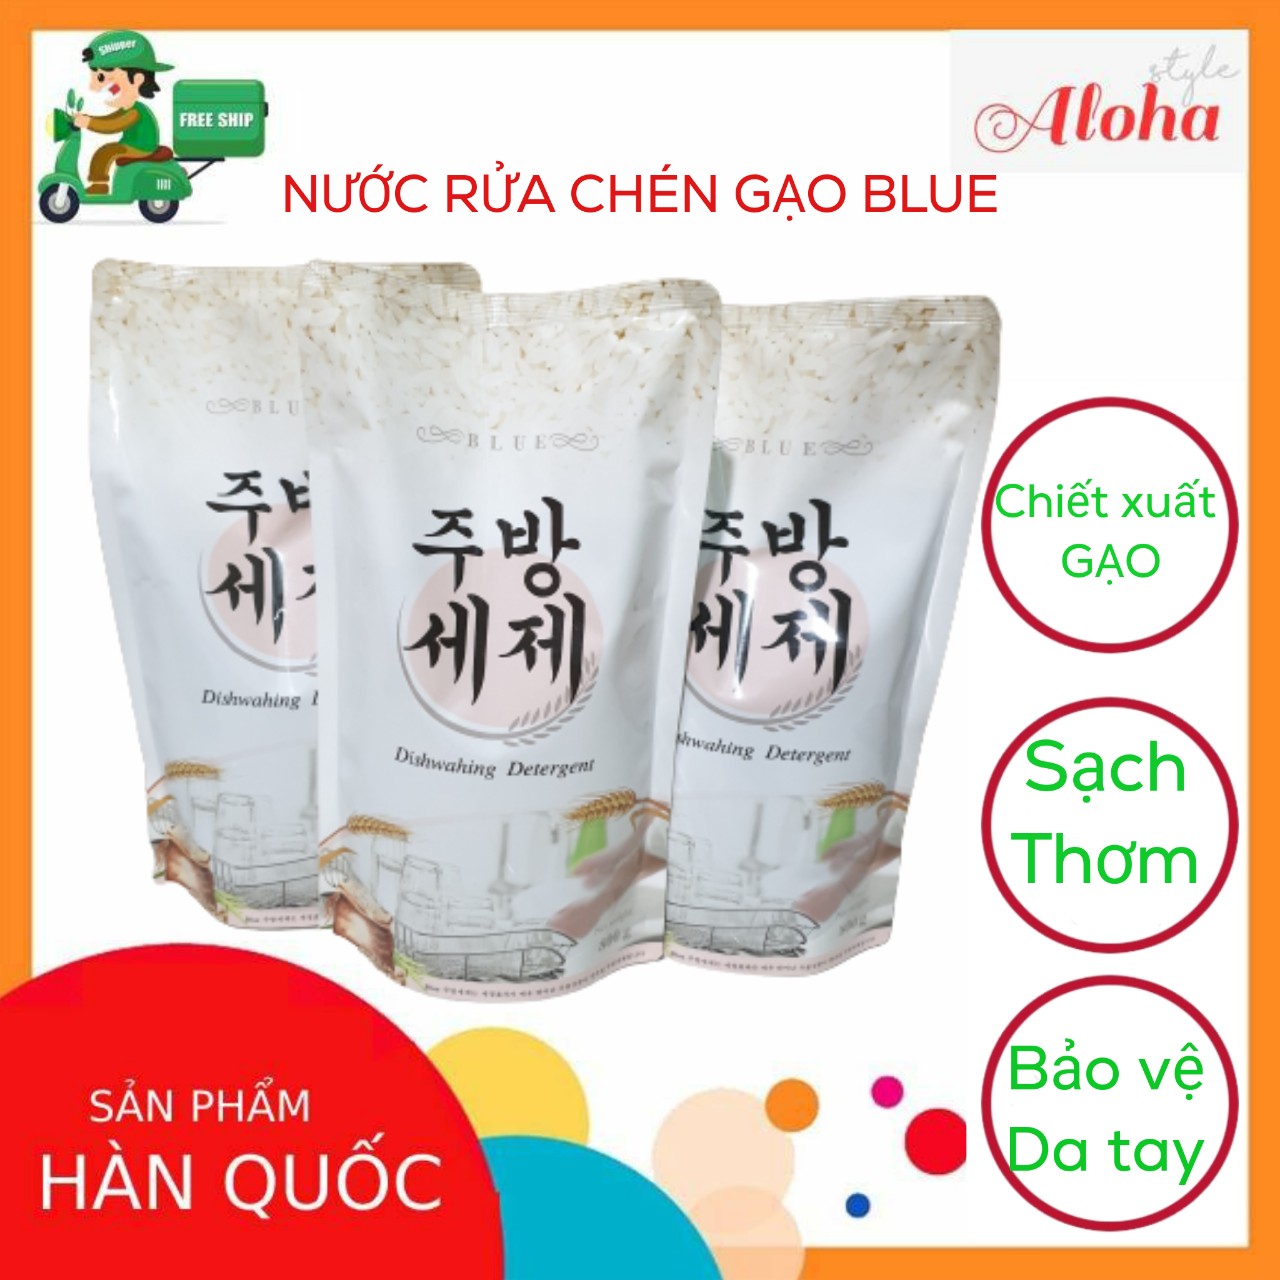 [SIÊU RẺ] COMBO 3 BỊCH NƯỚC RỬA CHÉN GẠO BLUE HÀN QUỐC - Chất chiết xuất từ gạo: An toàn, sạch, thơm, không hại da tay - LEE’S HOME